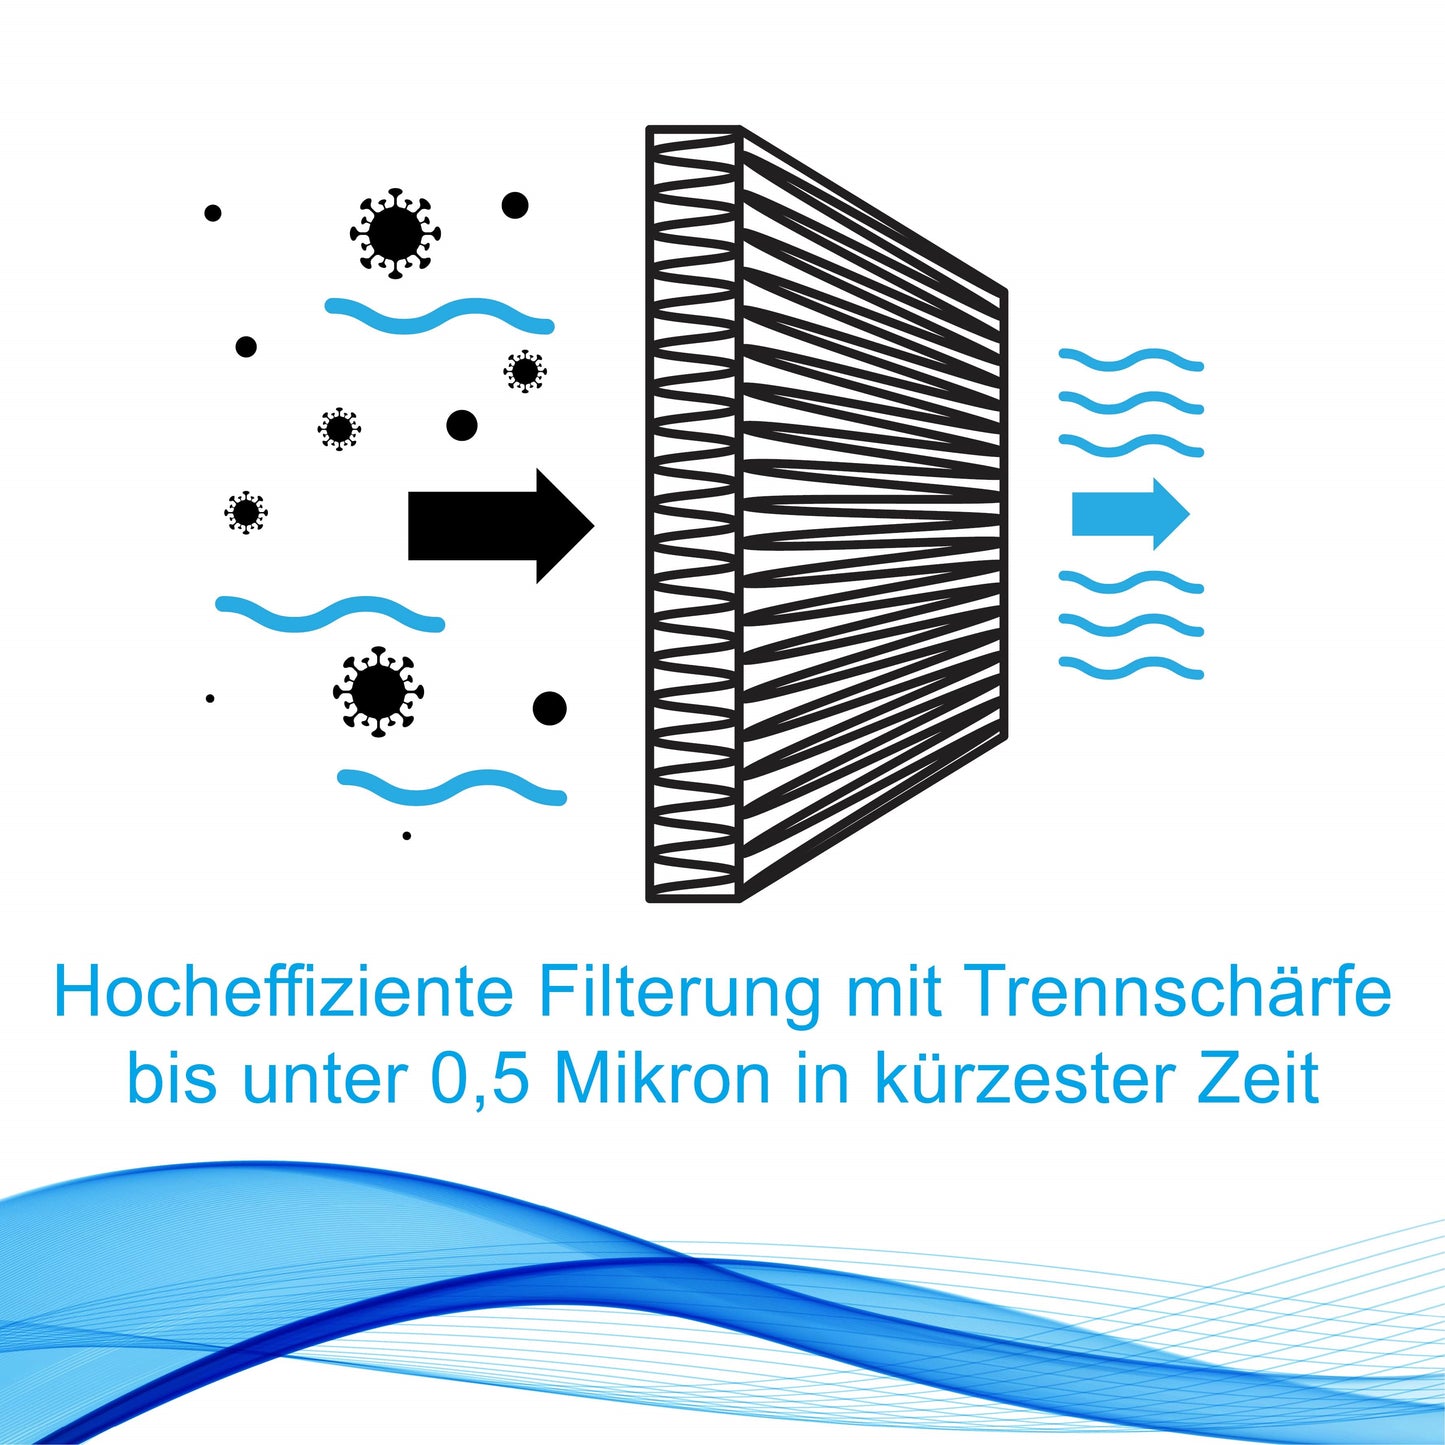 EcoSpa Filter: Flexibler Netzfilter für eine hervorragende Wasserqualität in allen Pools und Whirlpools. Desinfektion ohne Chlor, starke Filtration ohne Strömungsverlust, langlebig, innovativ und umweltschonend. Waschbar, anpassungsfähig, universell